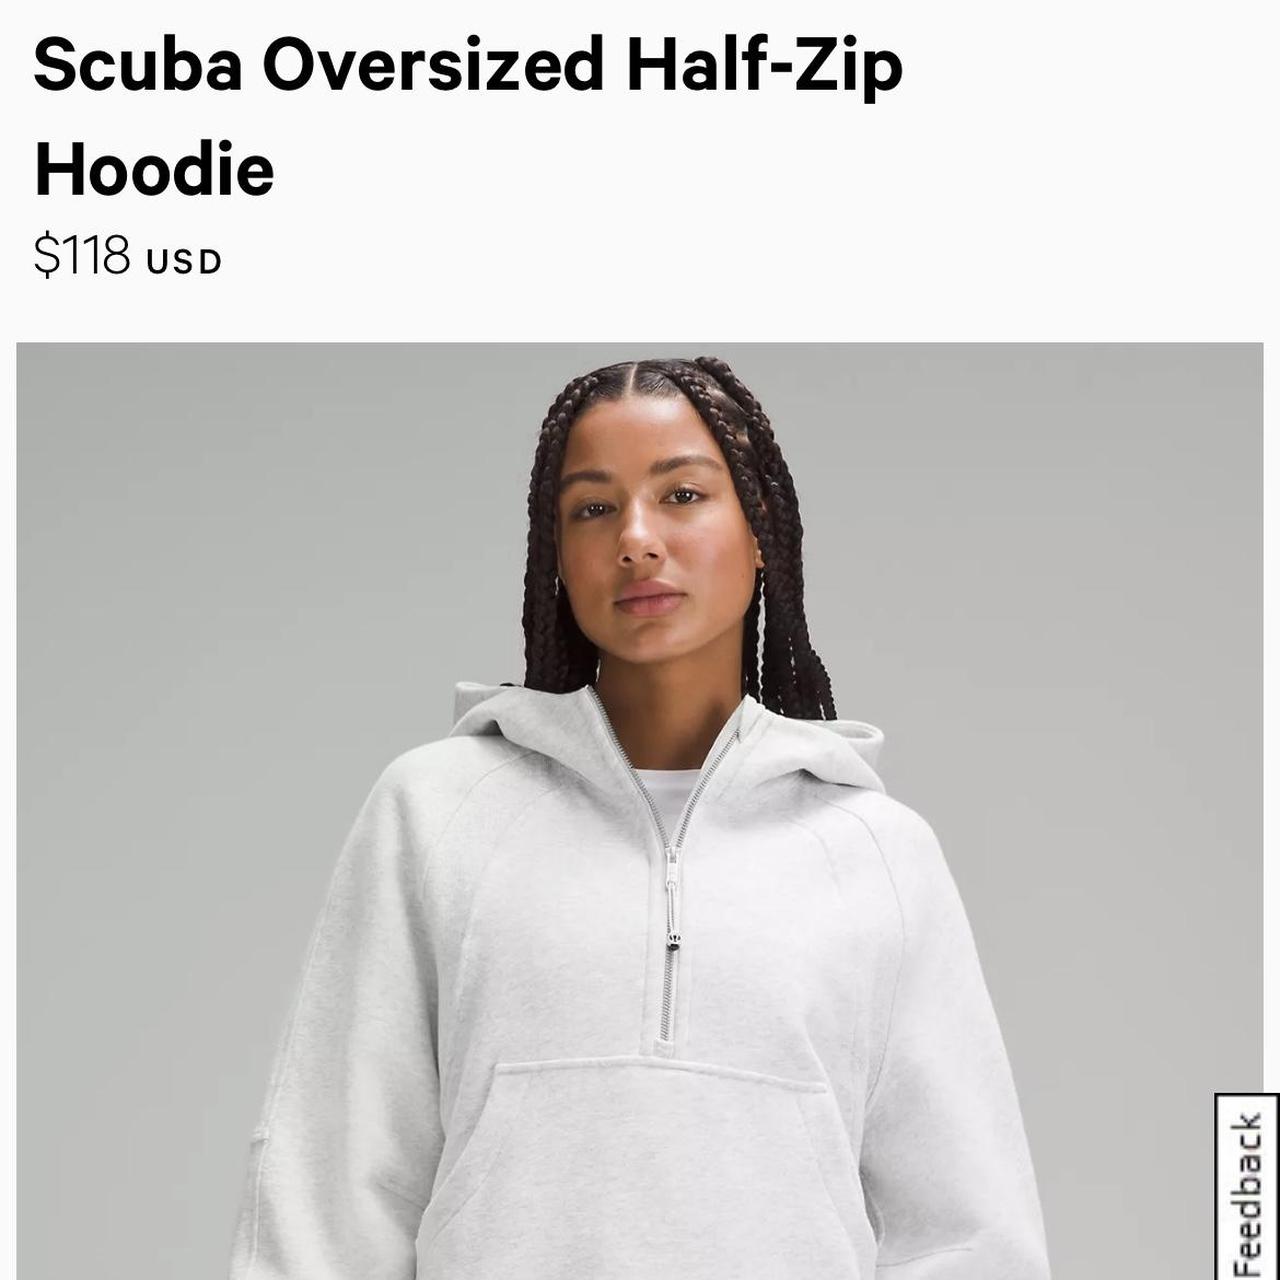 Lululemon Scuba Oversized Half Zip Hoodie. Color is - Depop